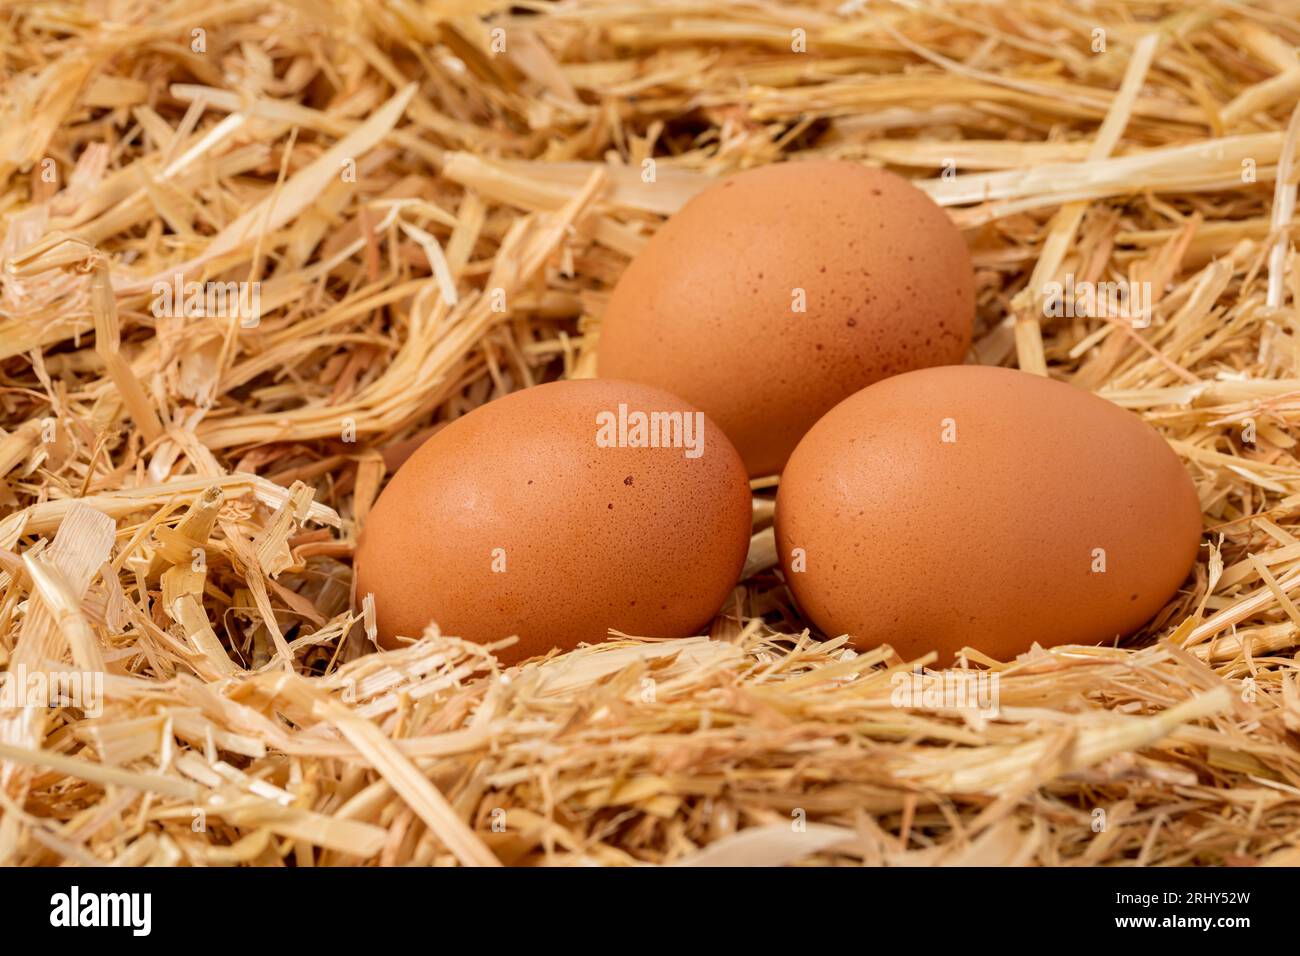 Huevos de pollo marrón fresco en nido de paja. Concepto de cultivo avícola orgánico, libre de jaula y de cría libre. Foto de stock